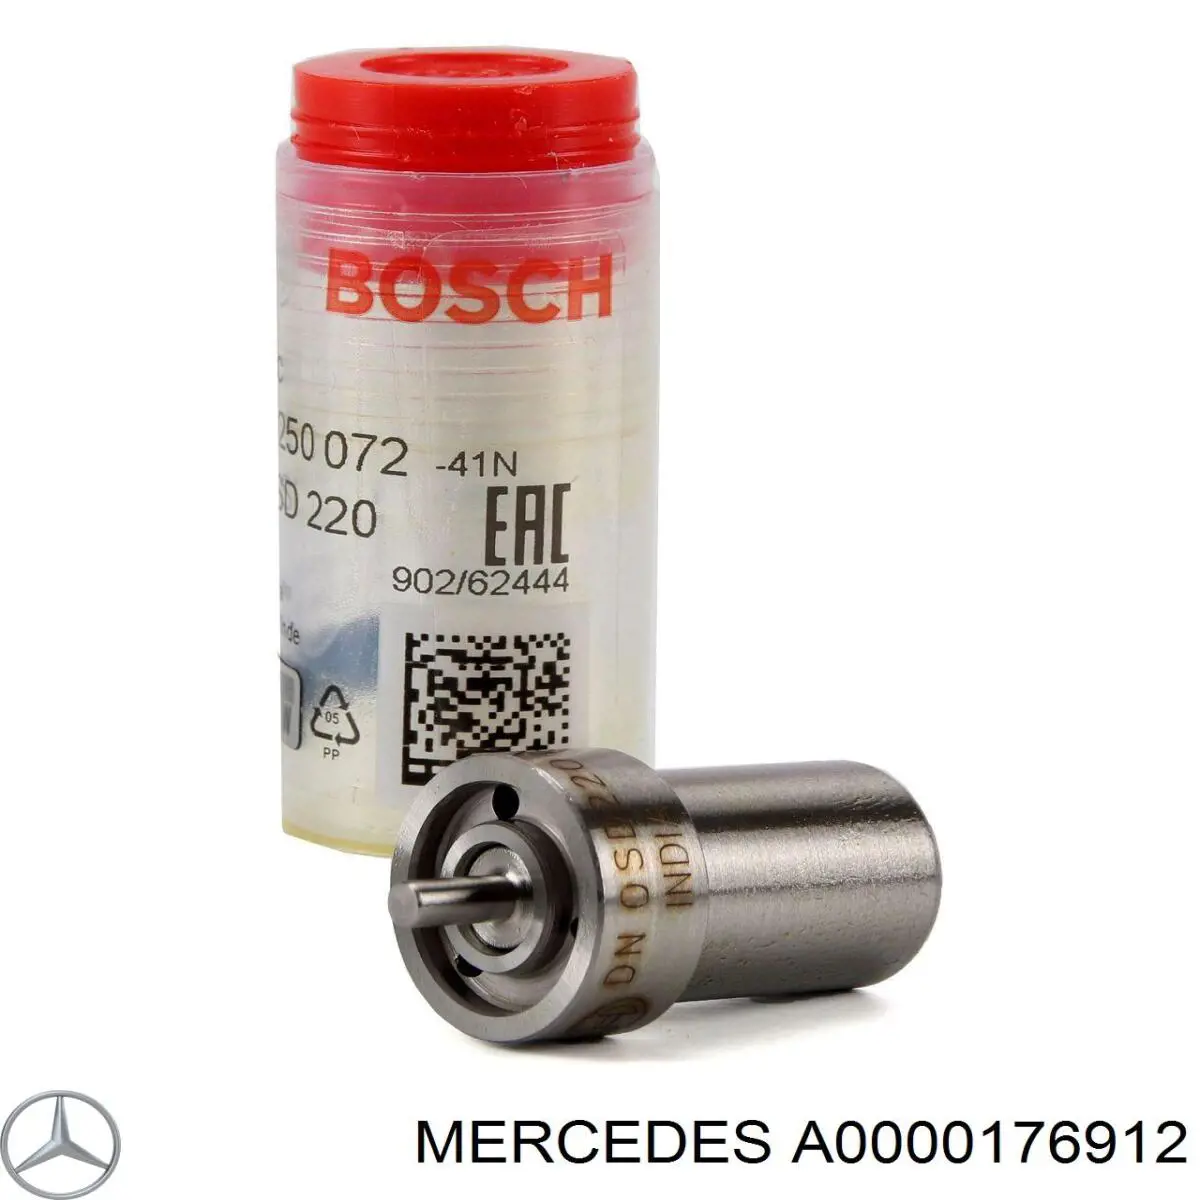 Inyector pulverizador diésel para Mercedes Bus 207-310 (602)